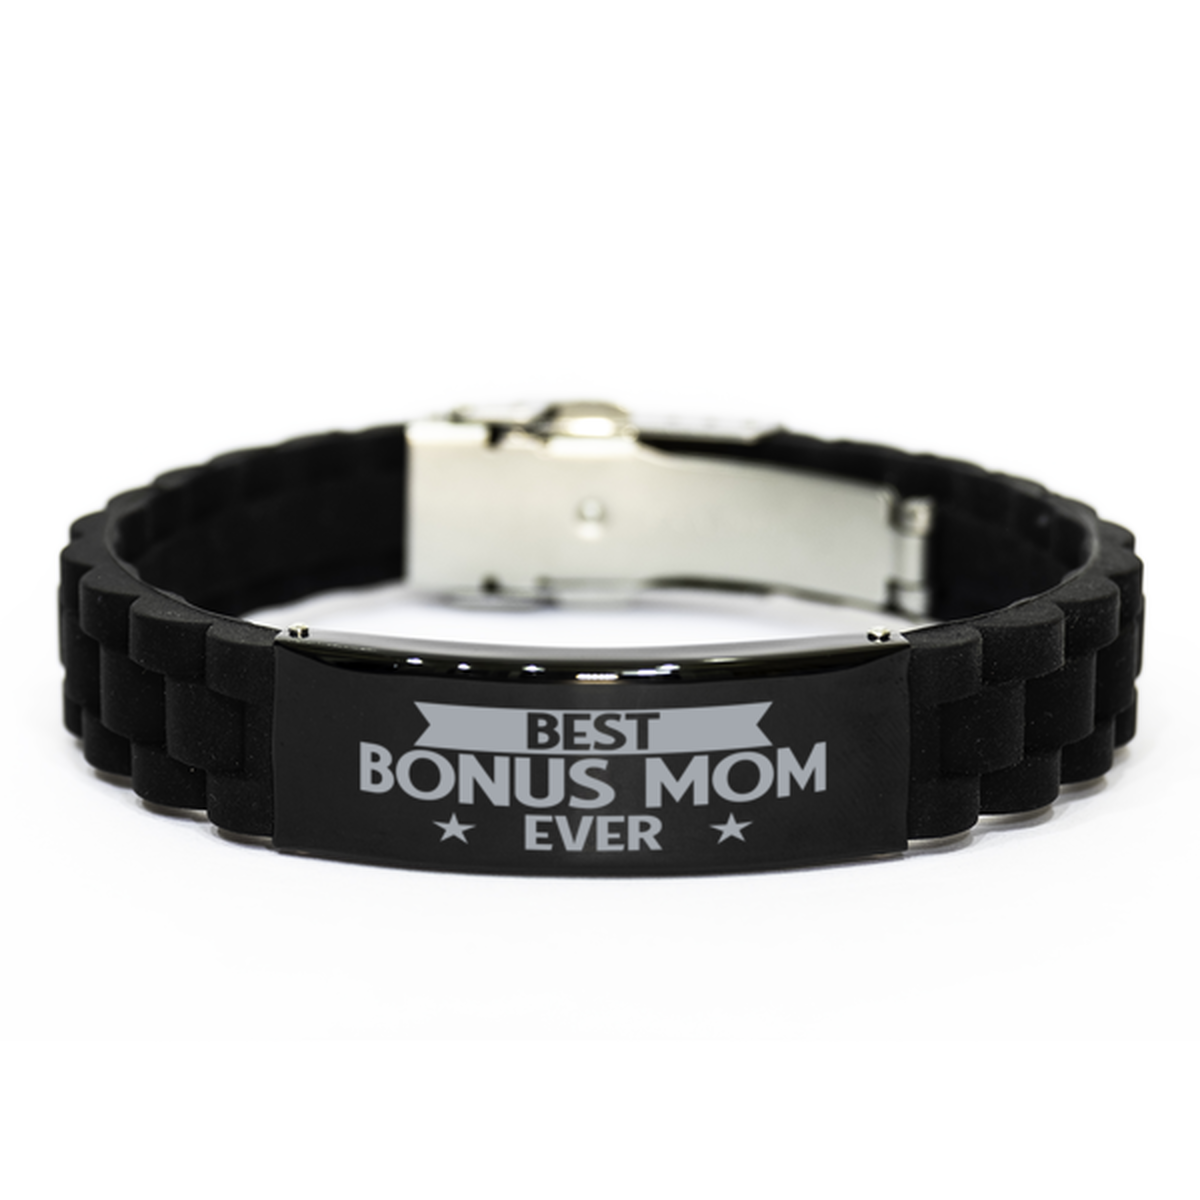 Best Bonus Mom Ever Bonus Mom Gifts, Funny Black Engraved Bracelet For Bonus Mom, Family Gifts For Women